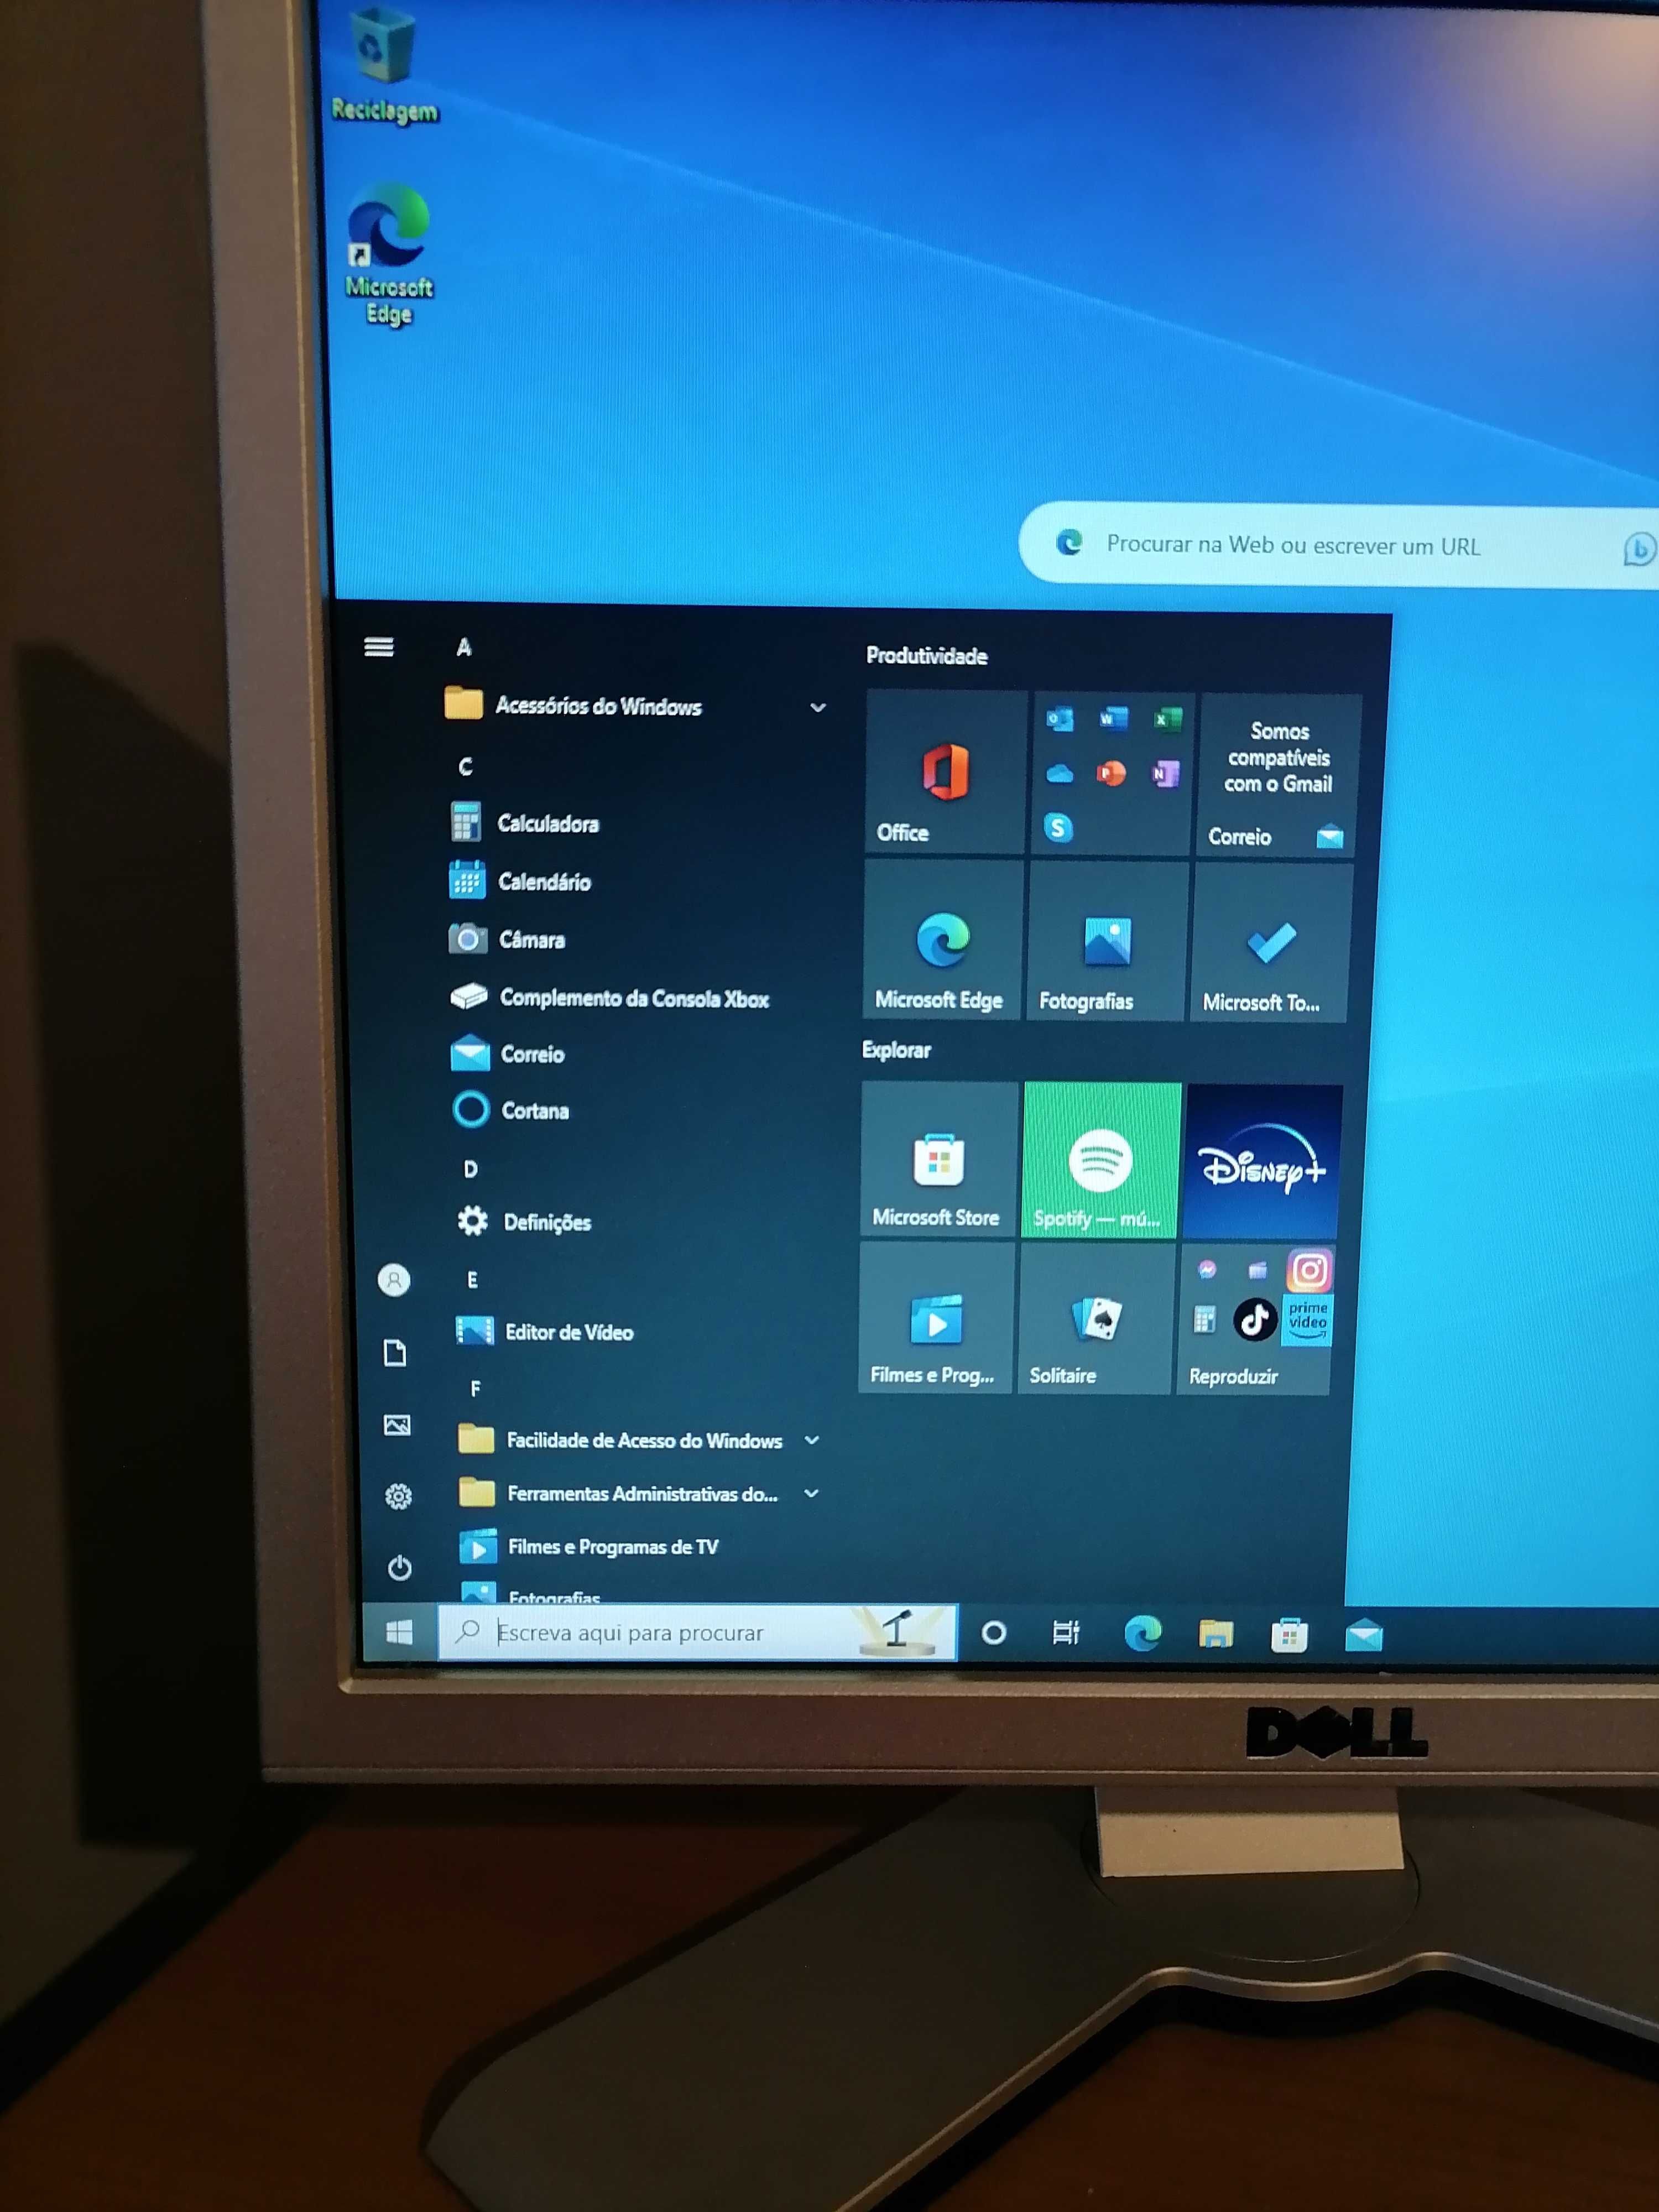 Desktop Dell Optiflex 790 - Intel i5